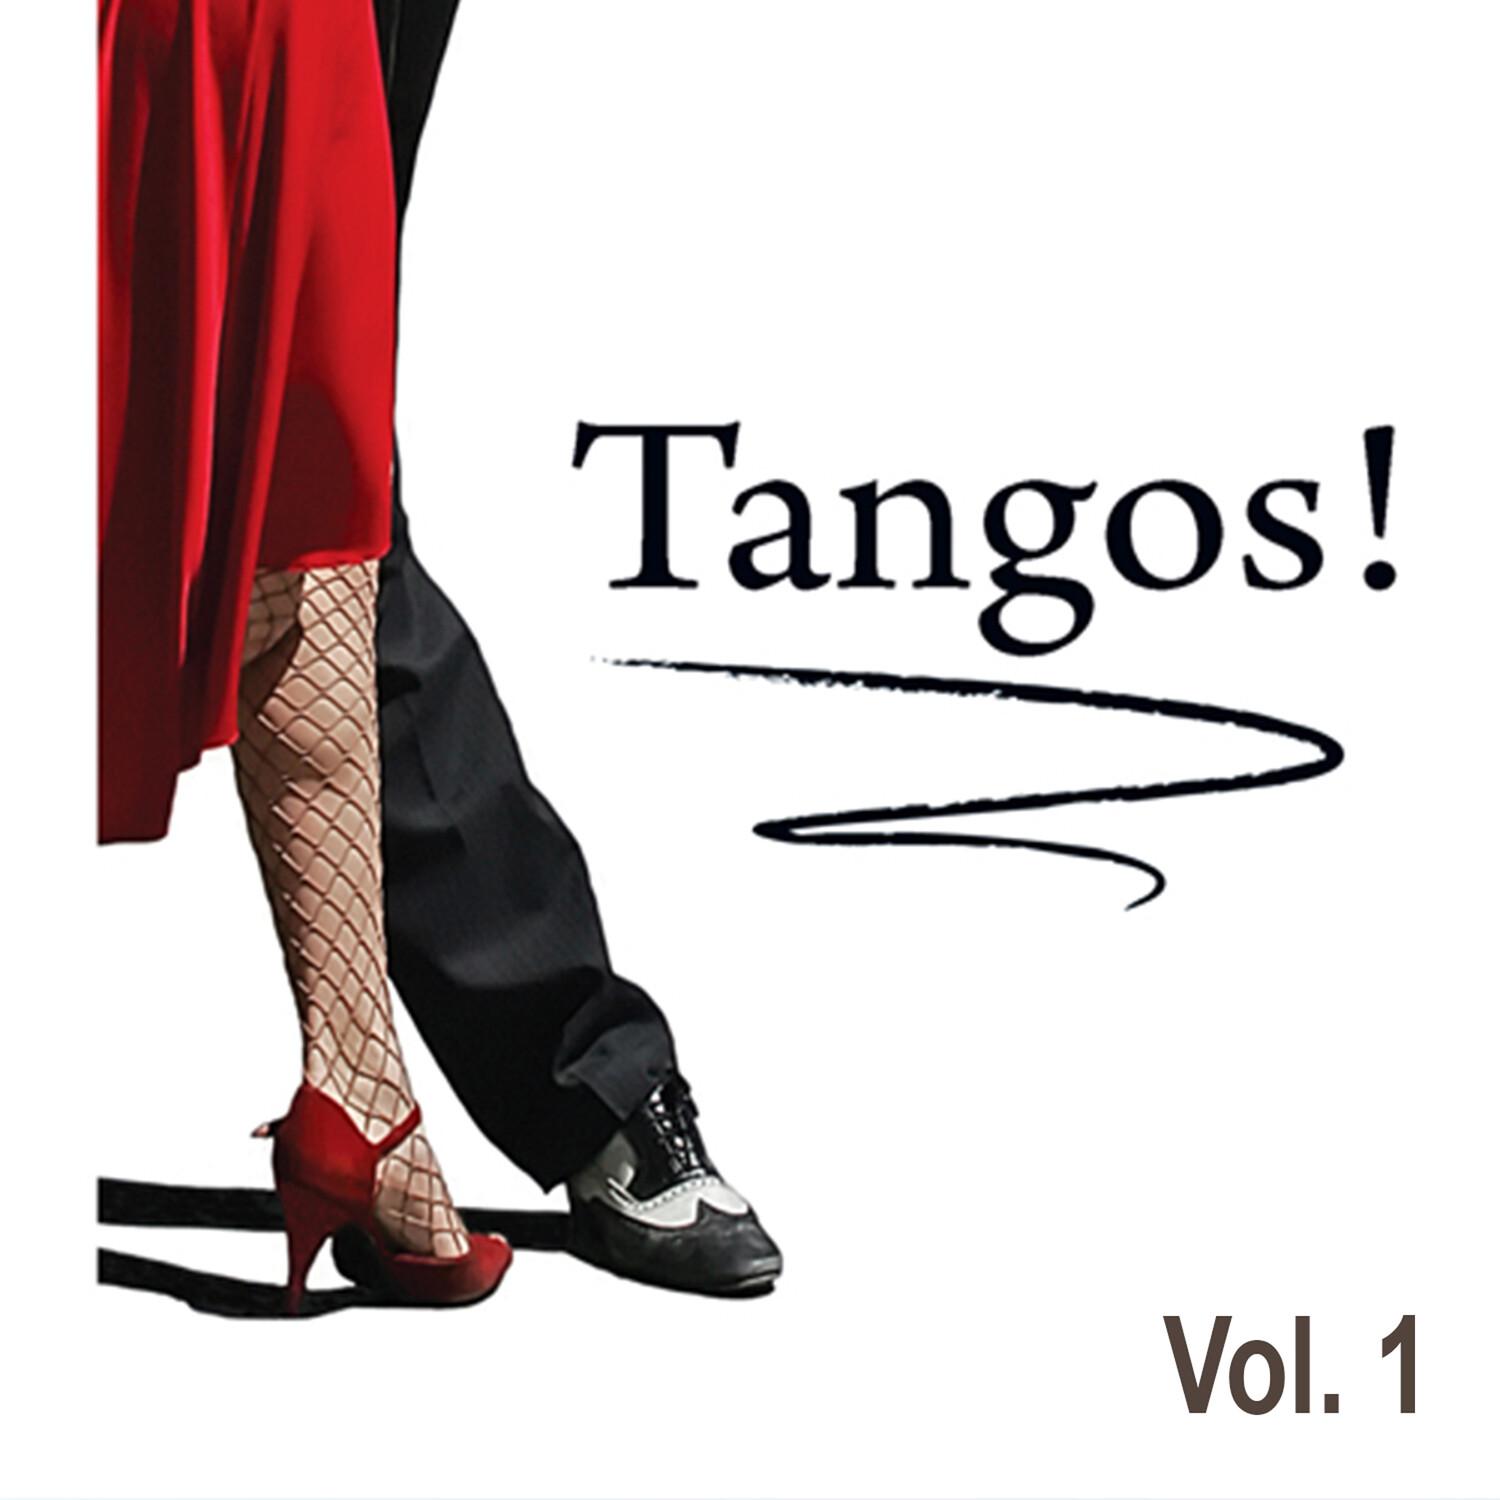 Tangos, Vol. 1